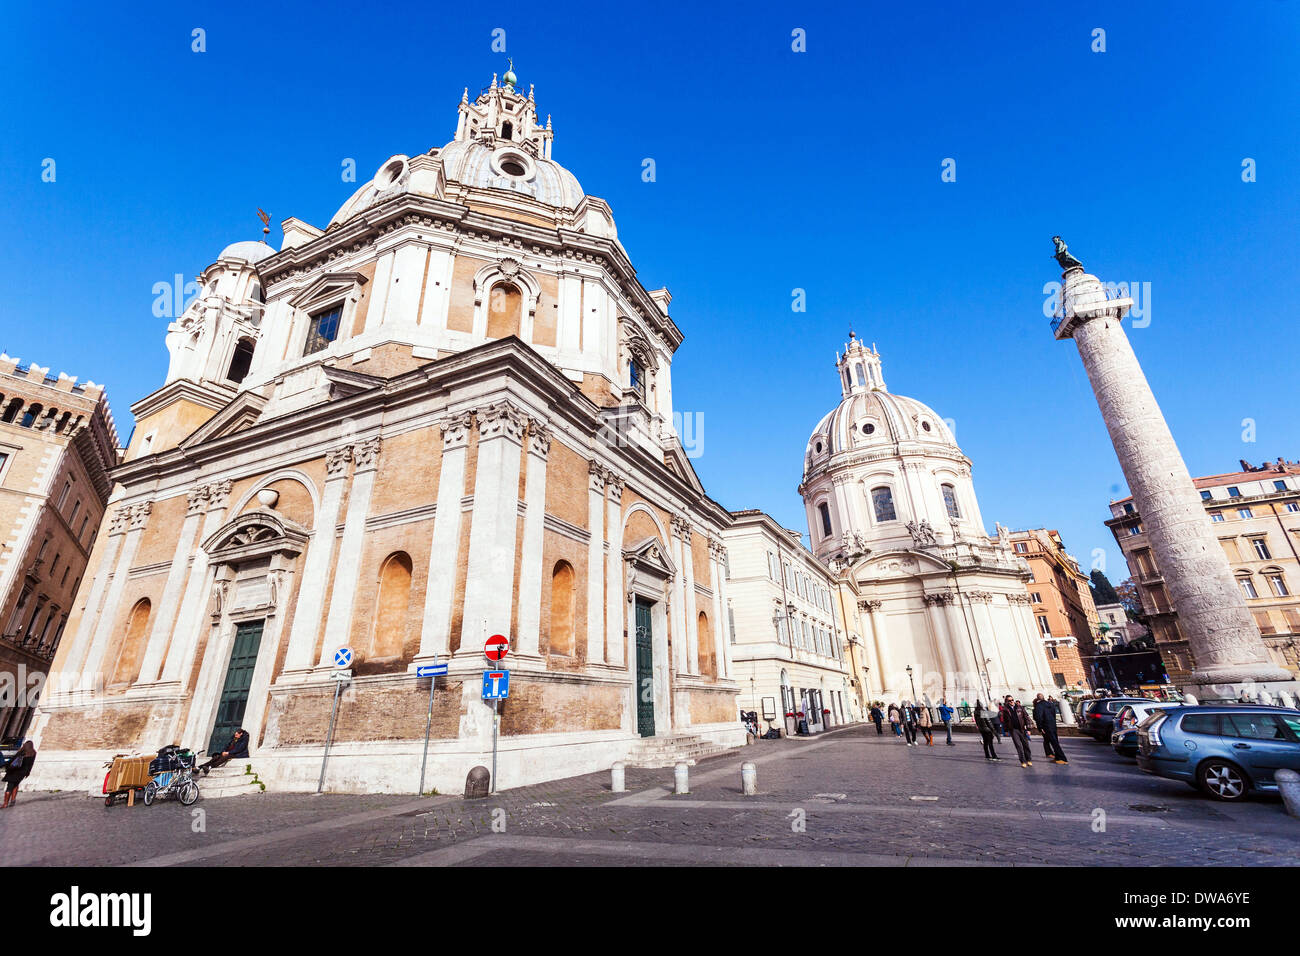 La Colonne Trajane et église de Santa Maria di Loreto, Rome Italie. Banque D'Images